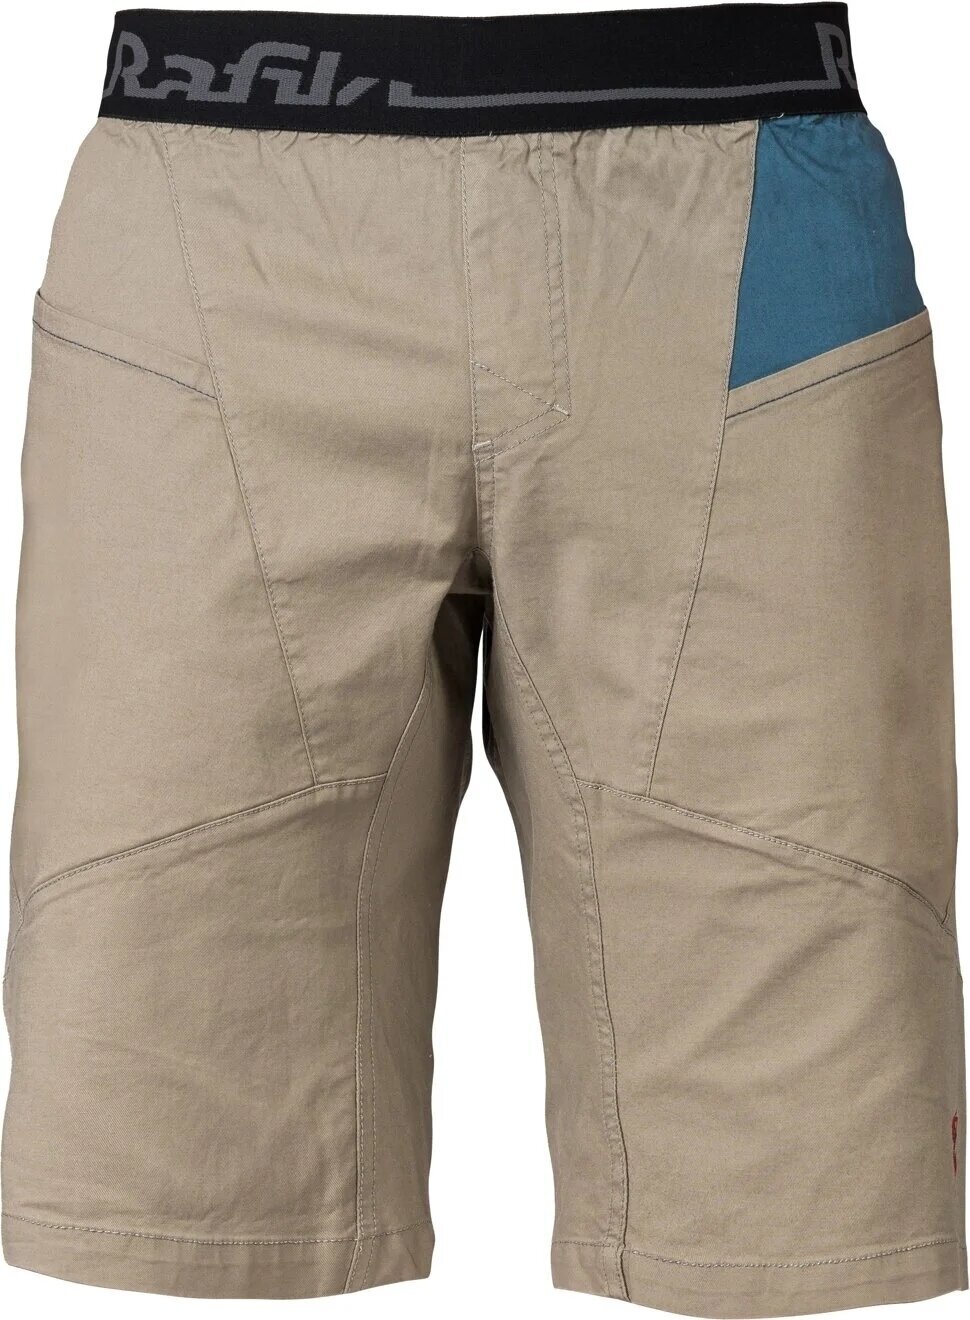 Outdoorové šortky Rafiki Megos Man Shorts Brindle/Stargazer L Outdoorové šortky